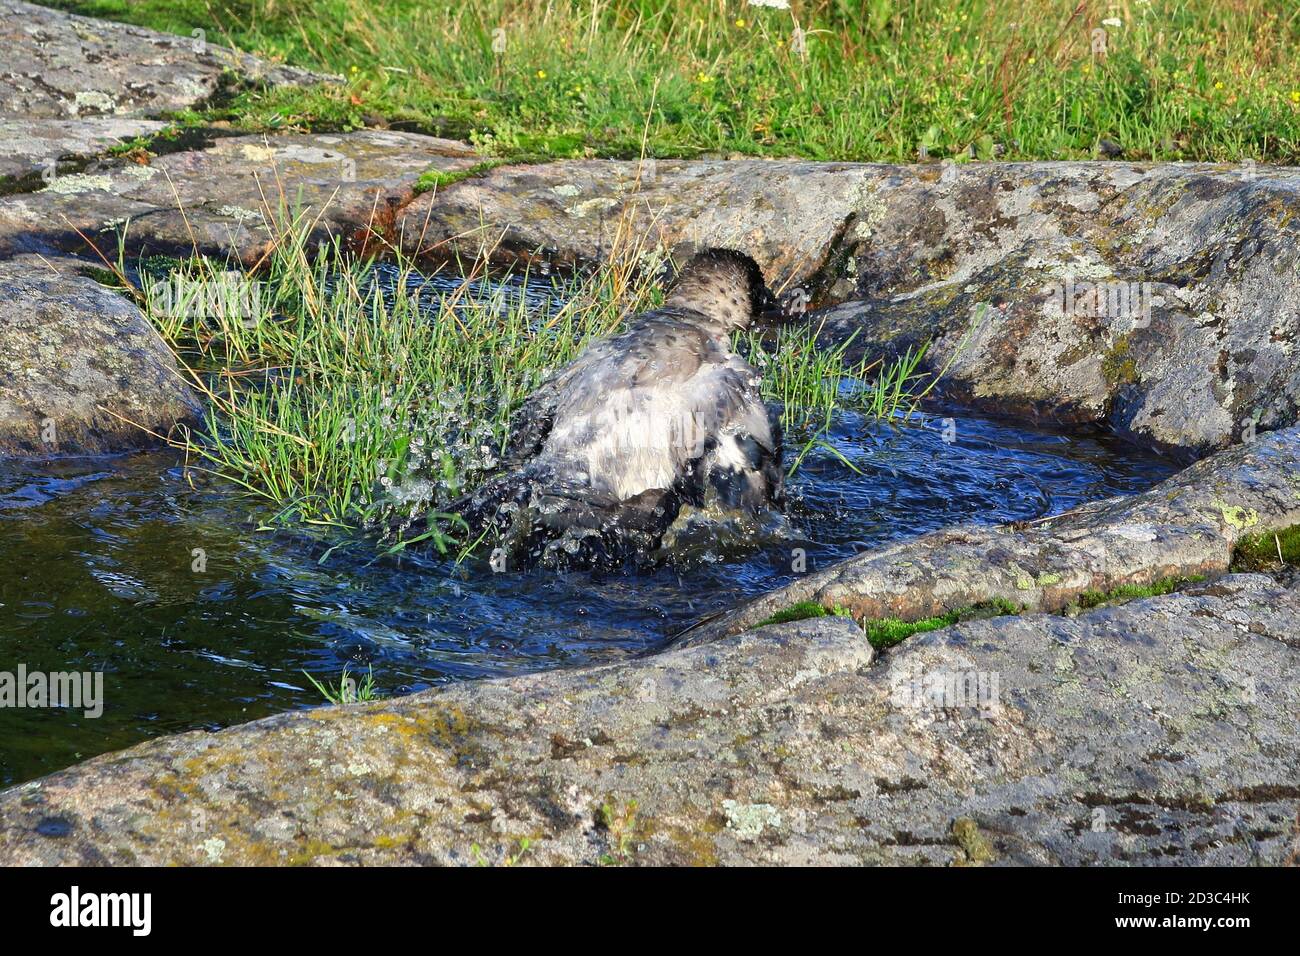 L'eau éclabousse quand le jeune Hooded Crow, Corvus cornix, est baigné dans une flaque d'eau de pluie sur un rocher dans un environnement naturel. Banque D'Images